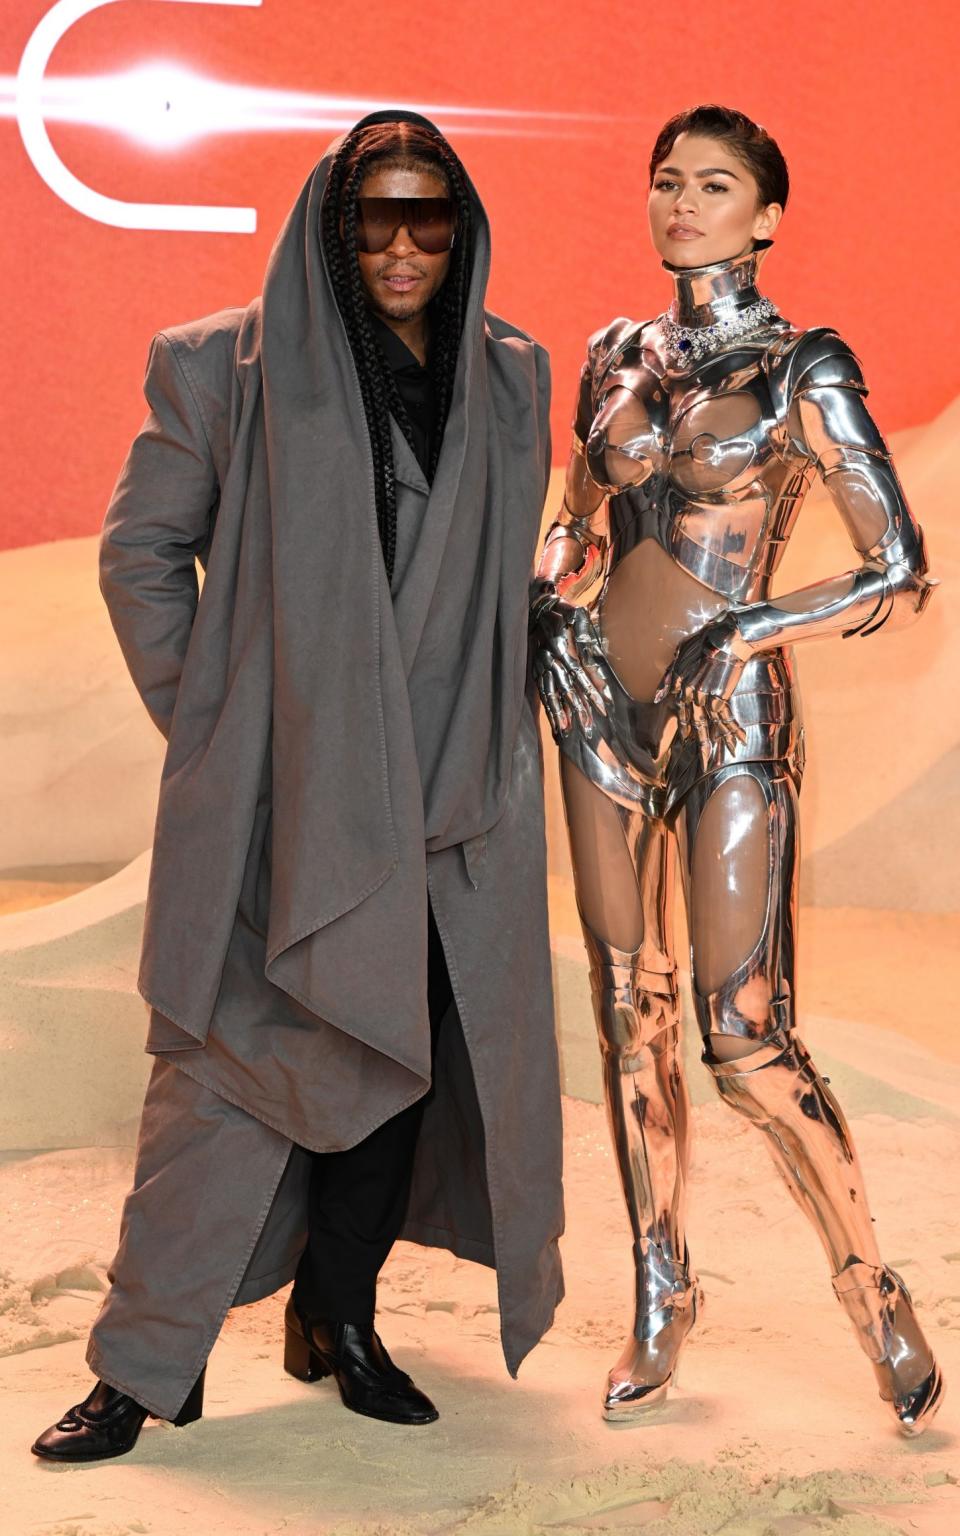 Ο στυλίστας της Zendaya, Law Roach, τη συνόδευσε στο κόκκινο χαλί στην πρεμιέρα της ταινίας στο Λονδίνο, όπου φορούσε ένα ασημί κοστούμι ρομπότ του Thierry Mugler.